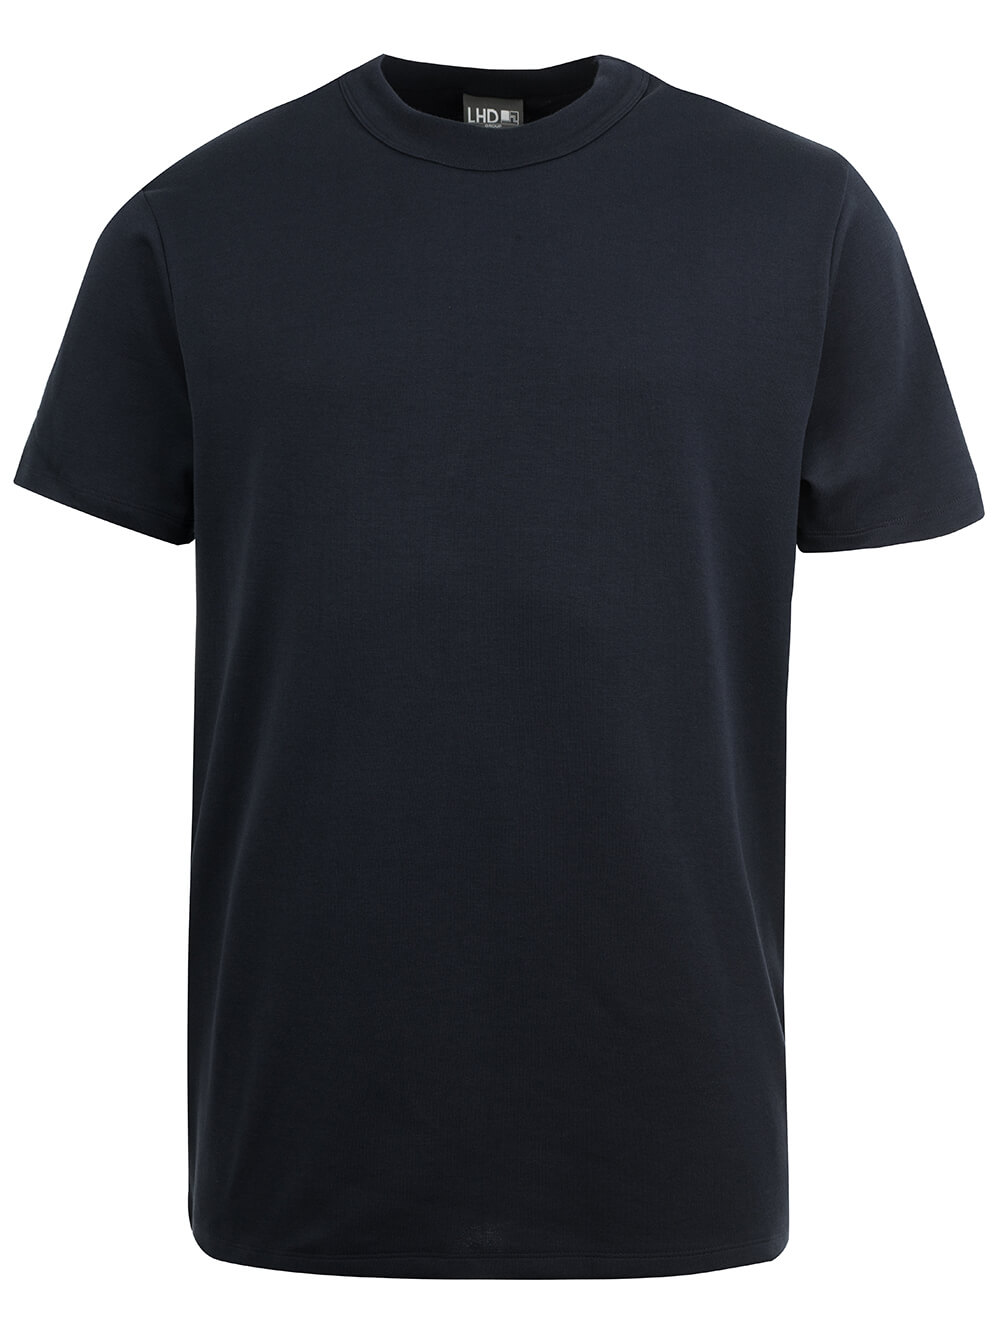 LHD Funktions-T-Shirt mit Silberionen, Baumwolle-Polyamid blau